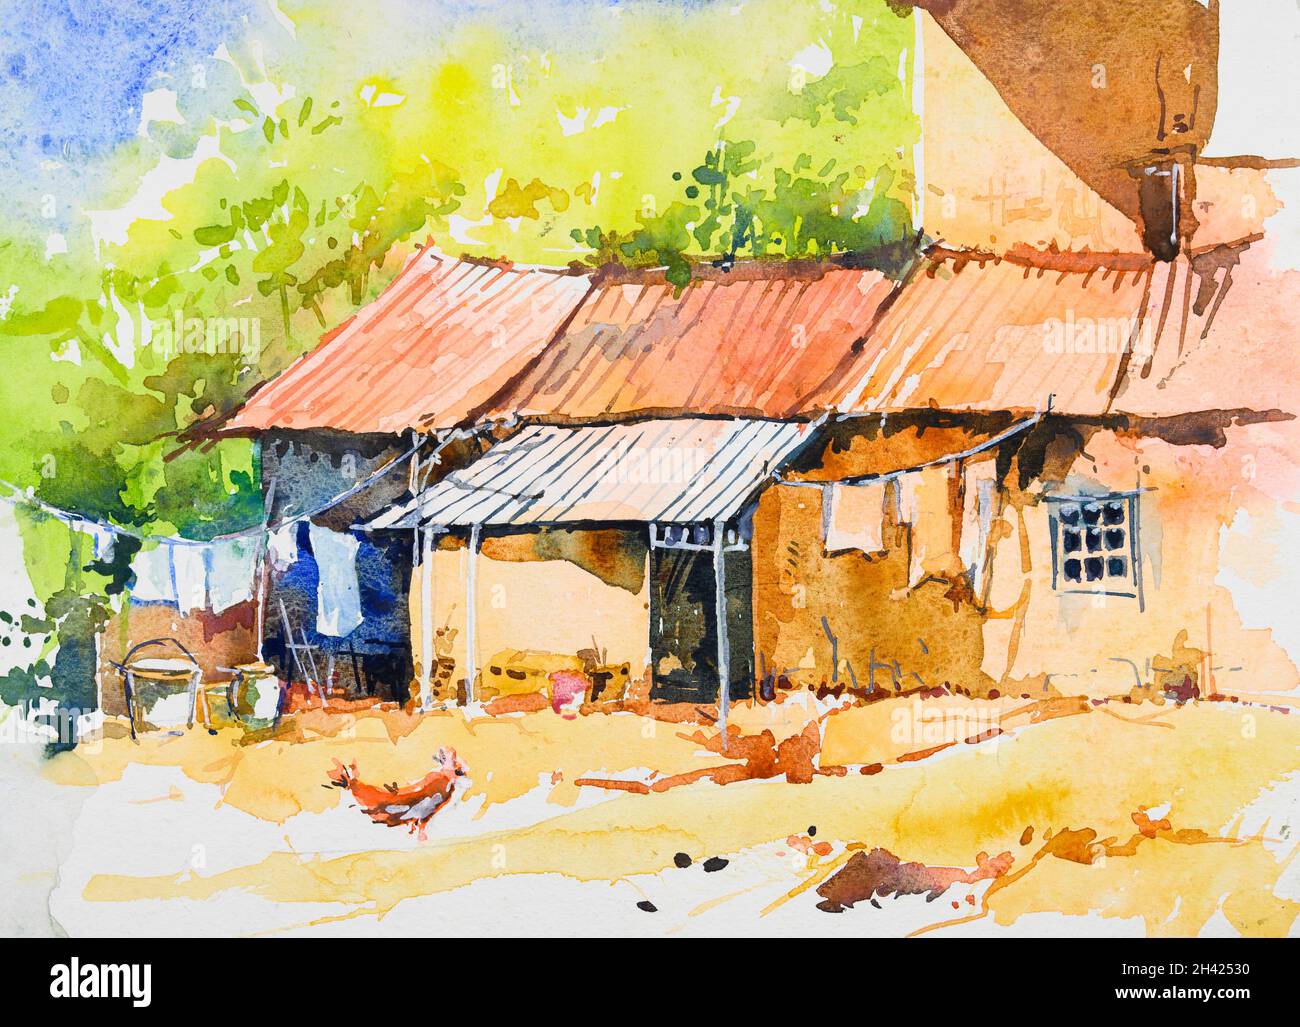 Peinture aquarelle de maisons étroitement construites.Illustration peinte à la main.Village indien. Banque D'Images